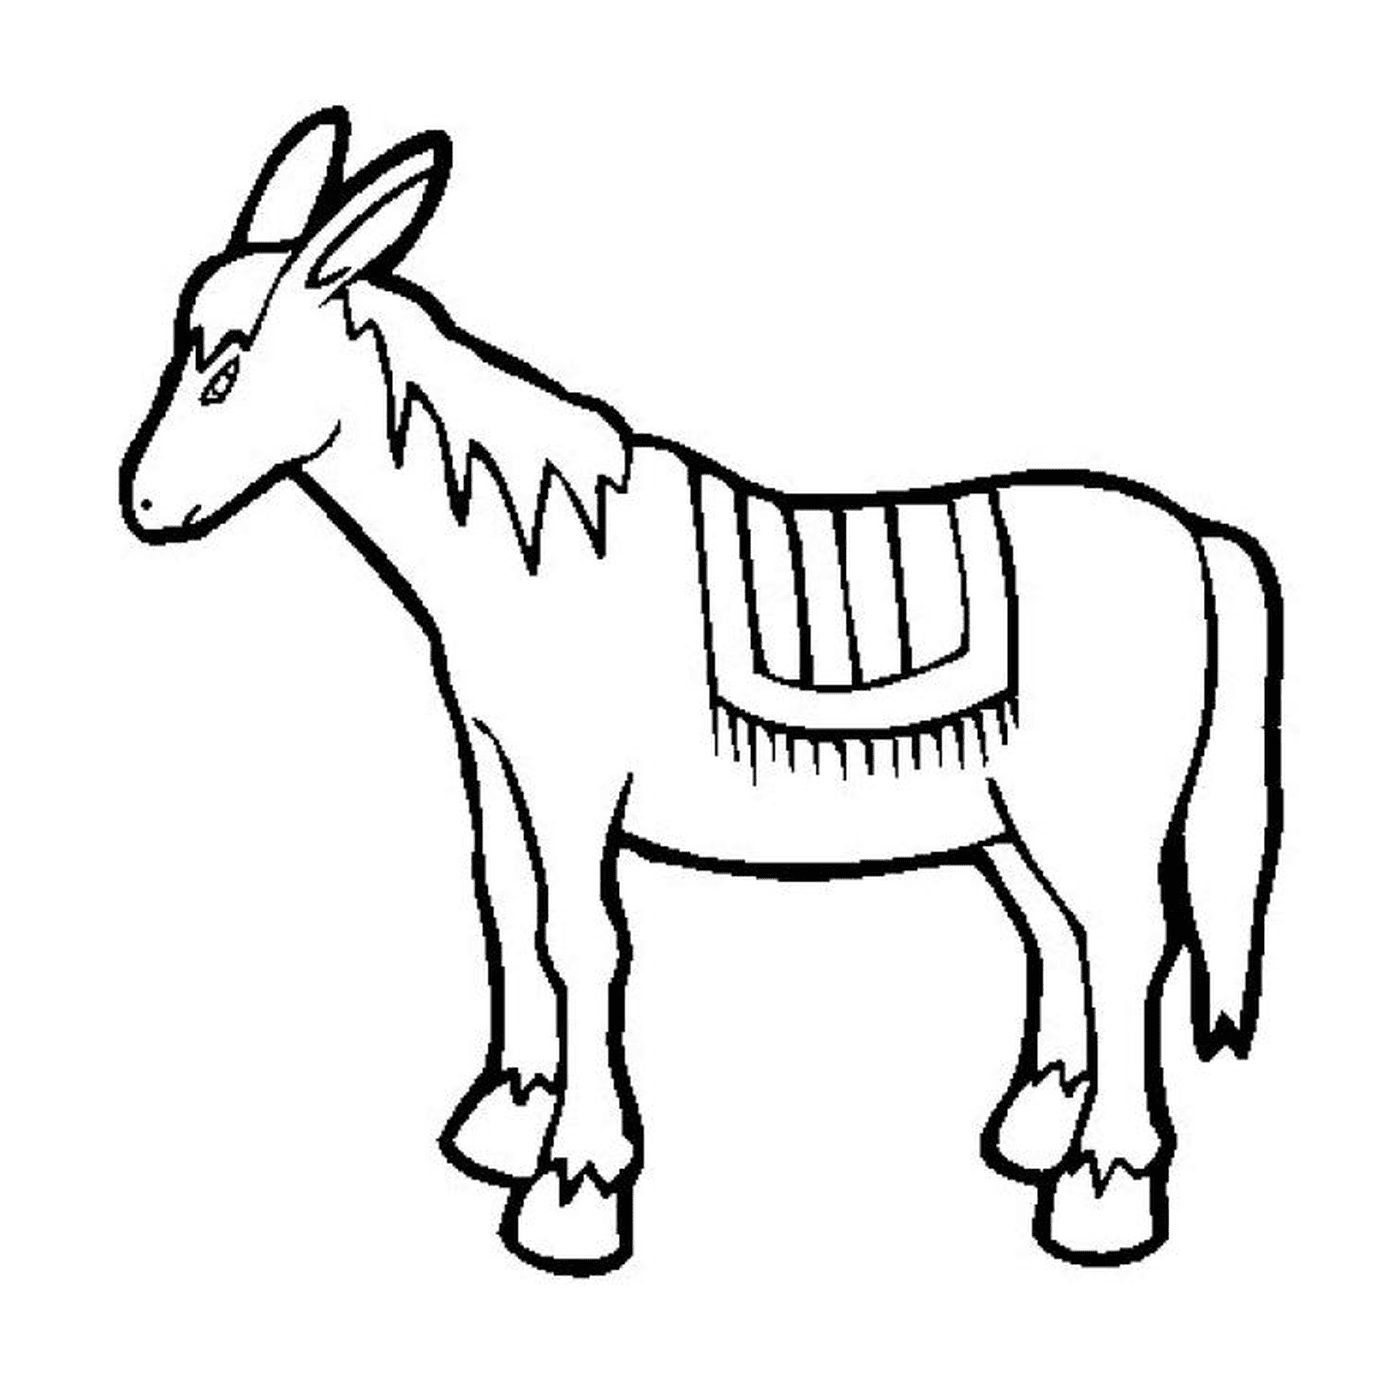  Ein Bild eines gezeichneten Tieres 